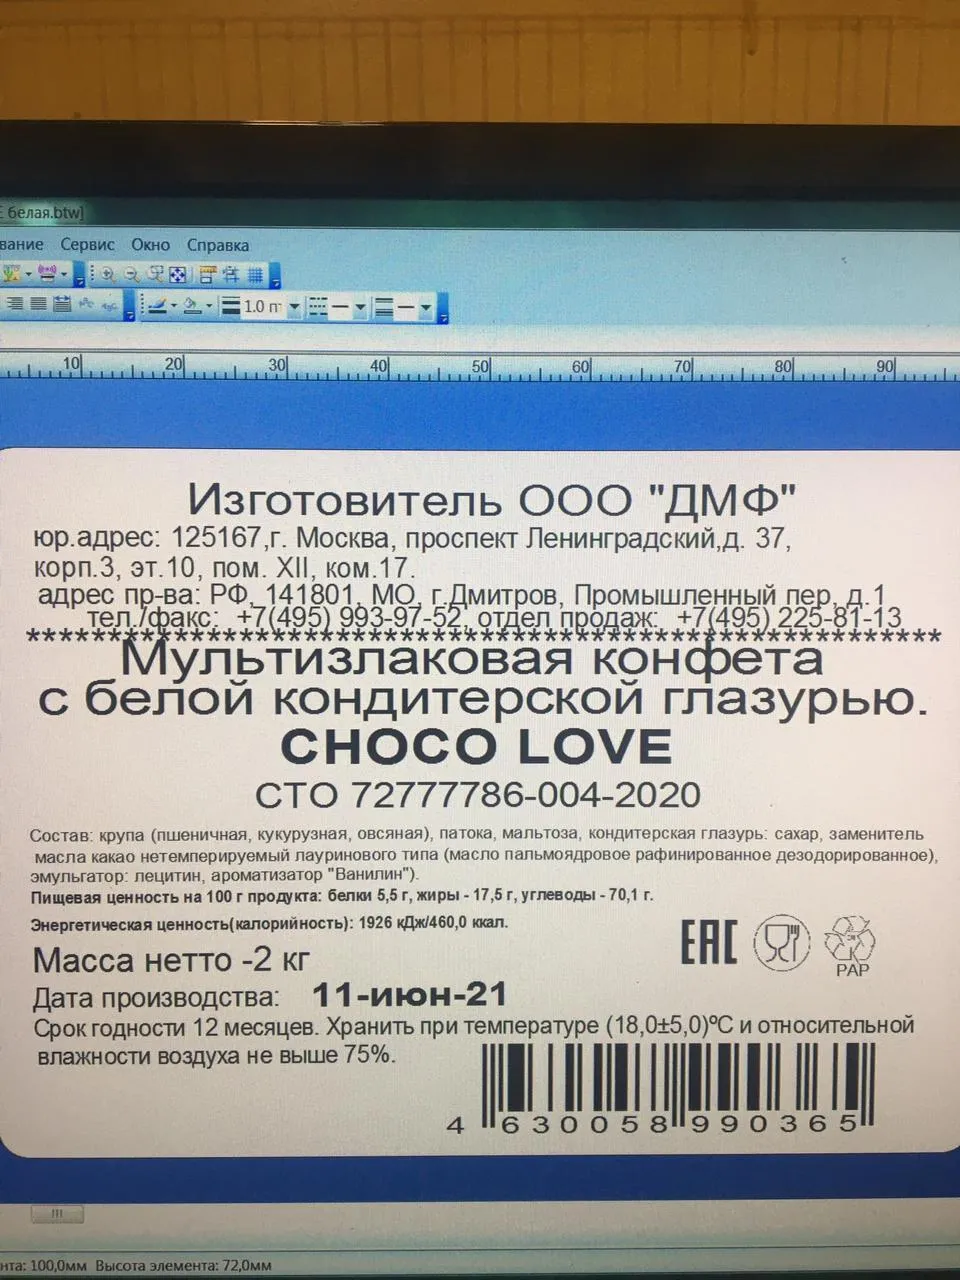 фотография продукта Мультизлаковая конфета "CHOCO LOVE" 